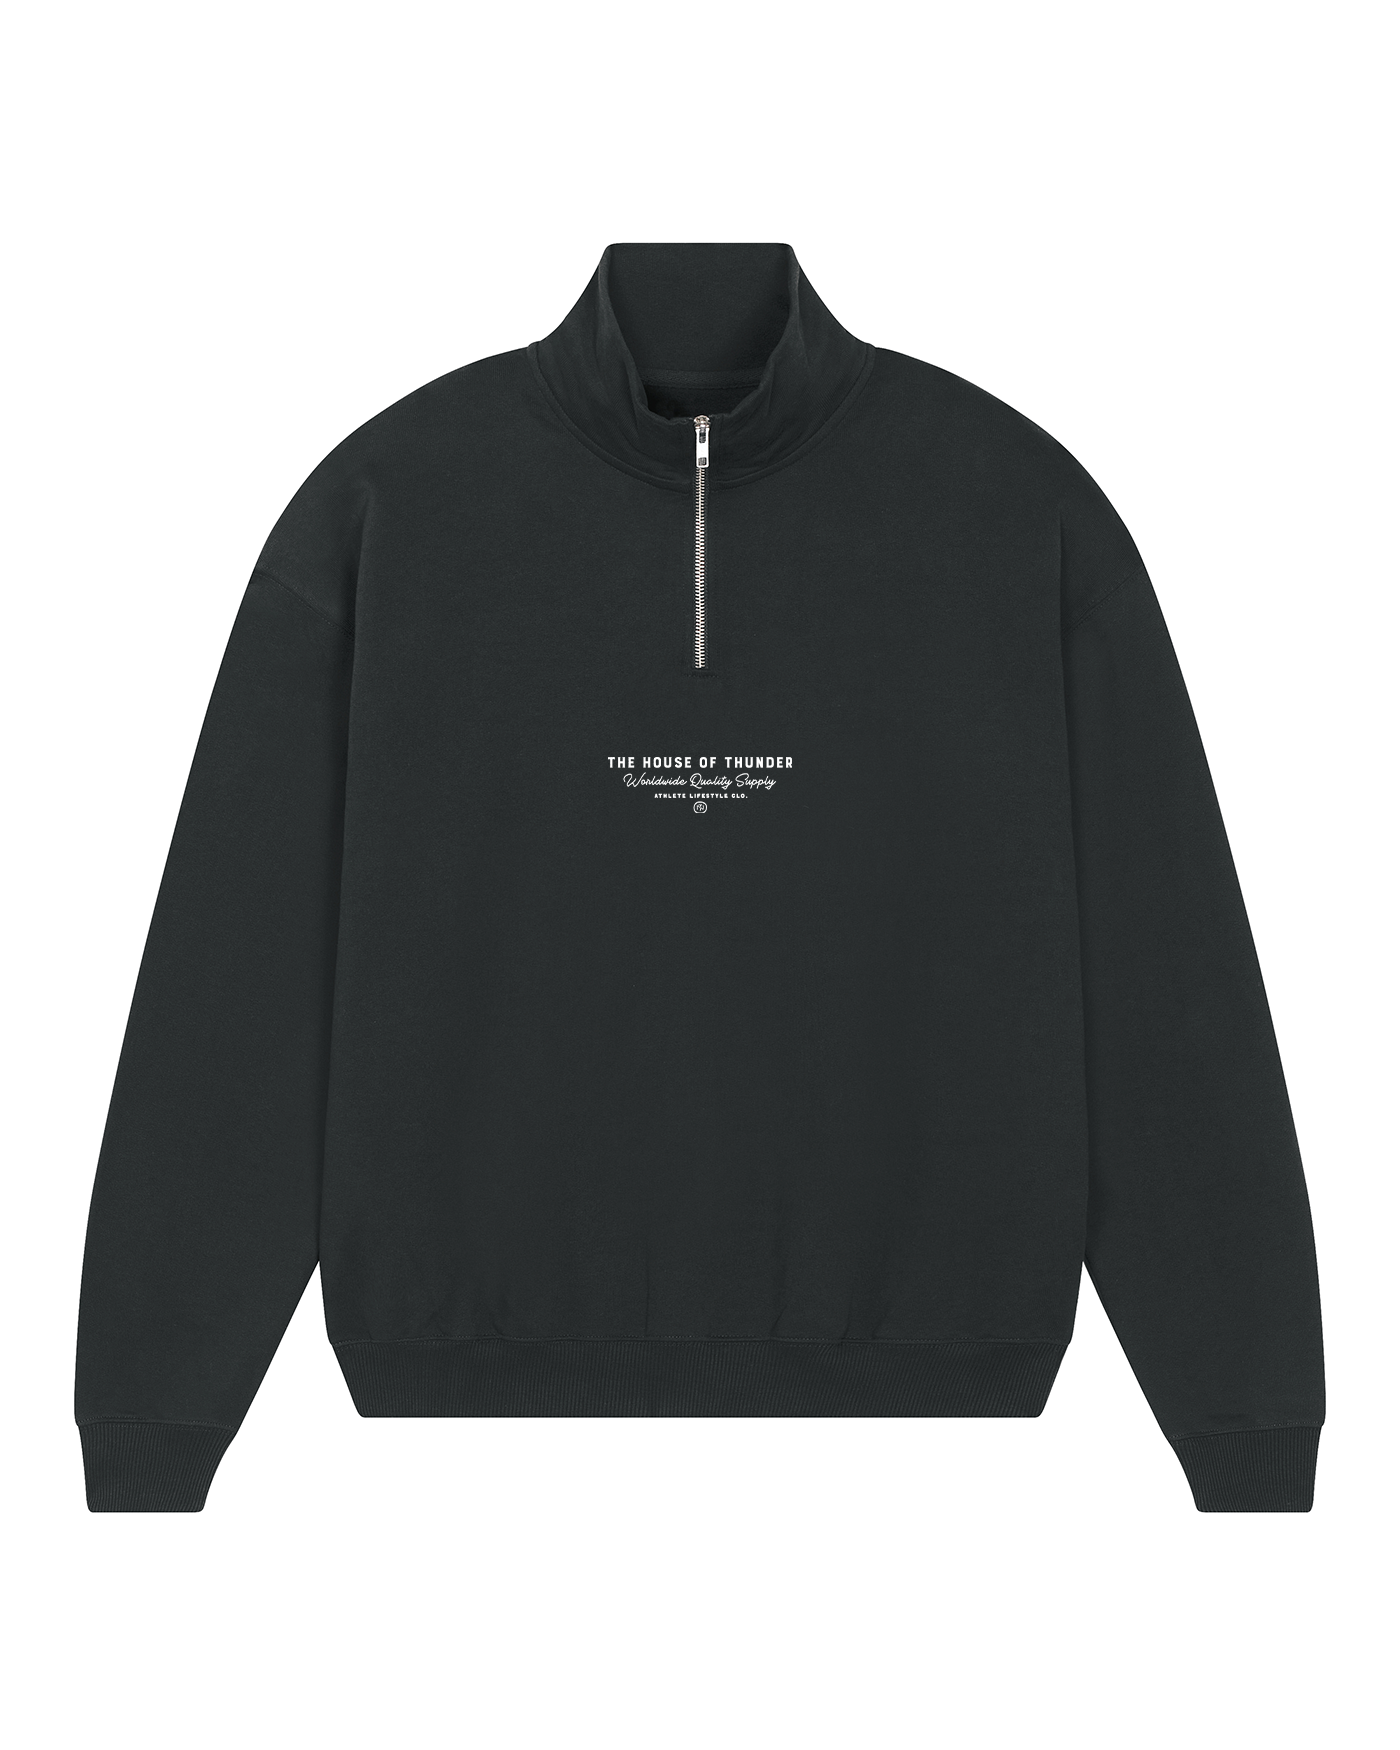 Good Job Partner Half Zip Sweatshirt - Black